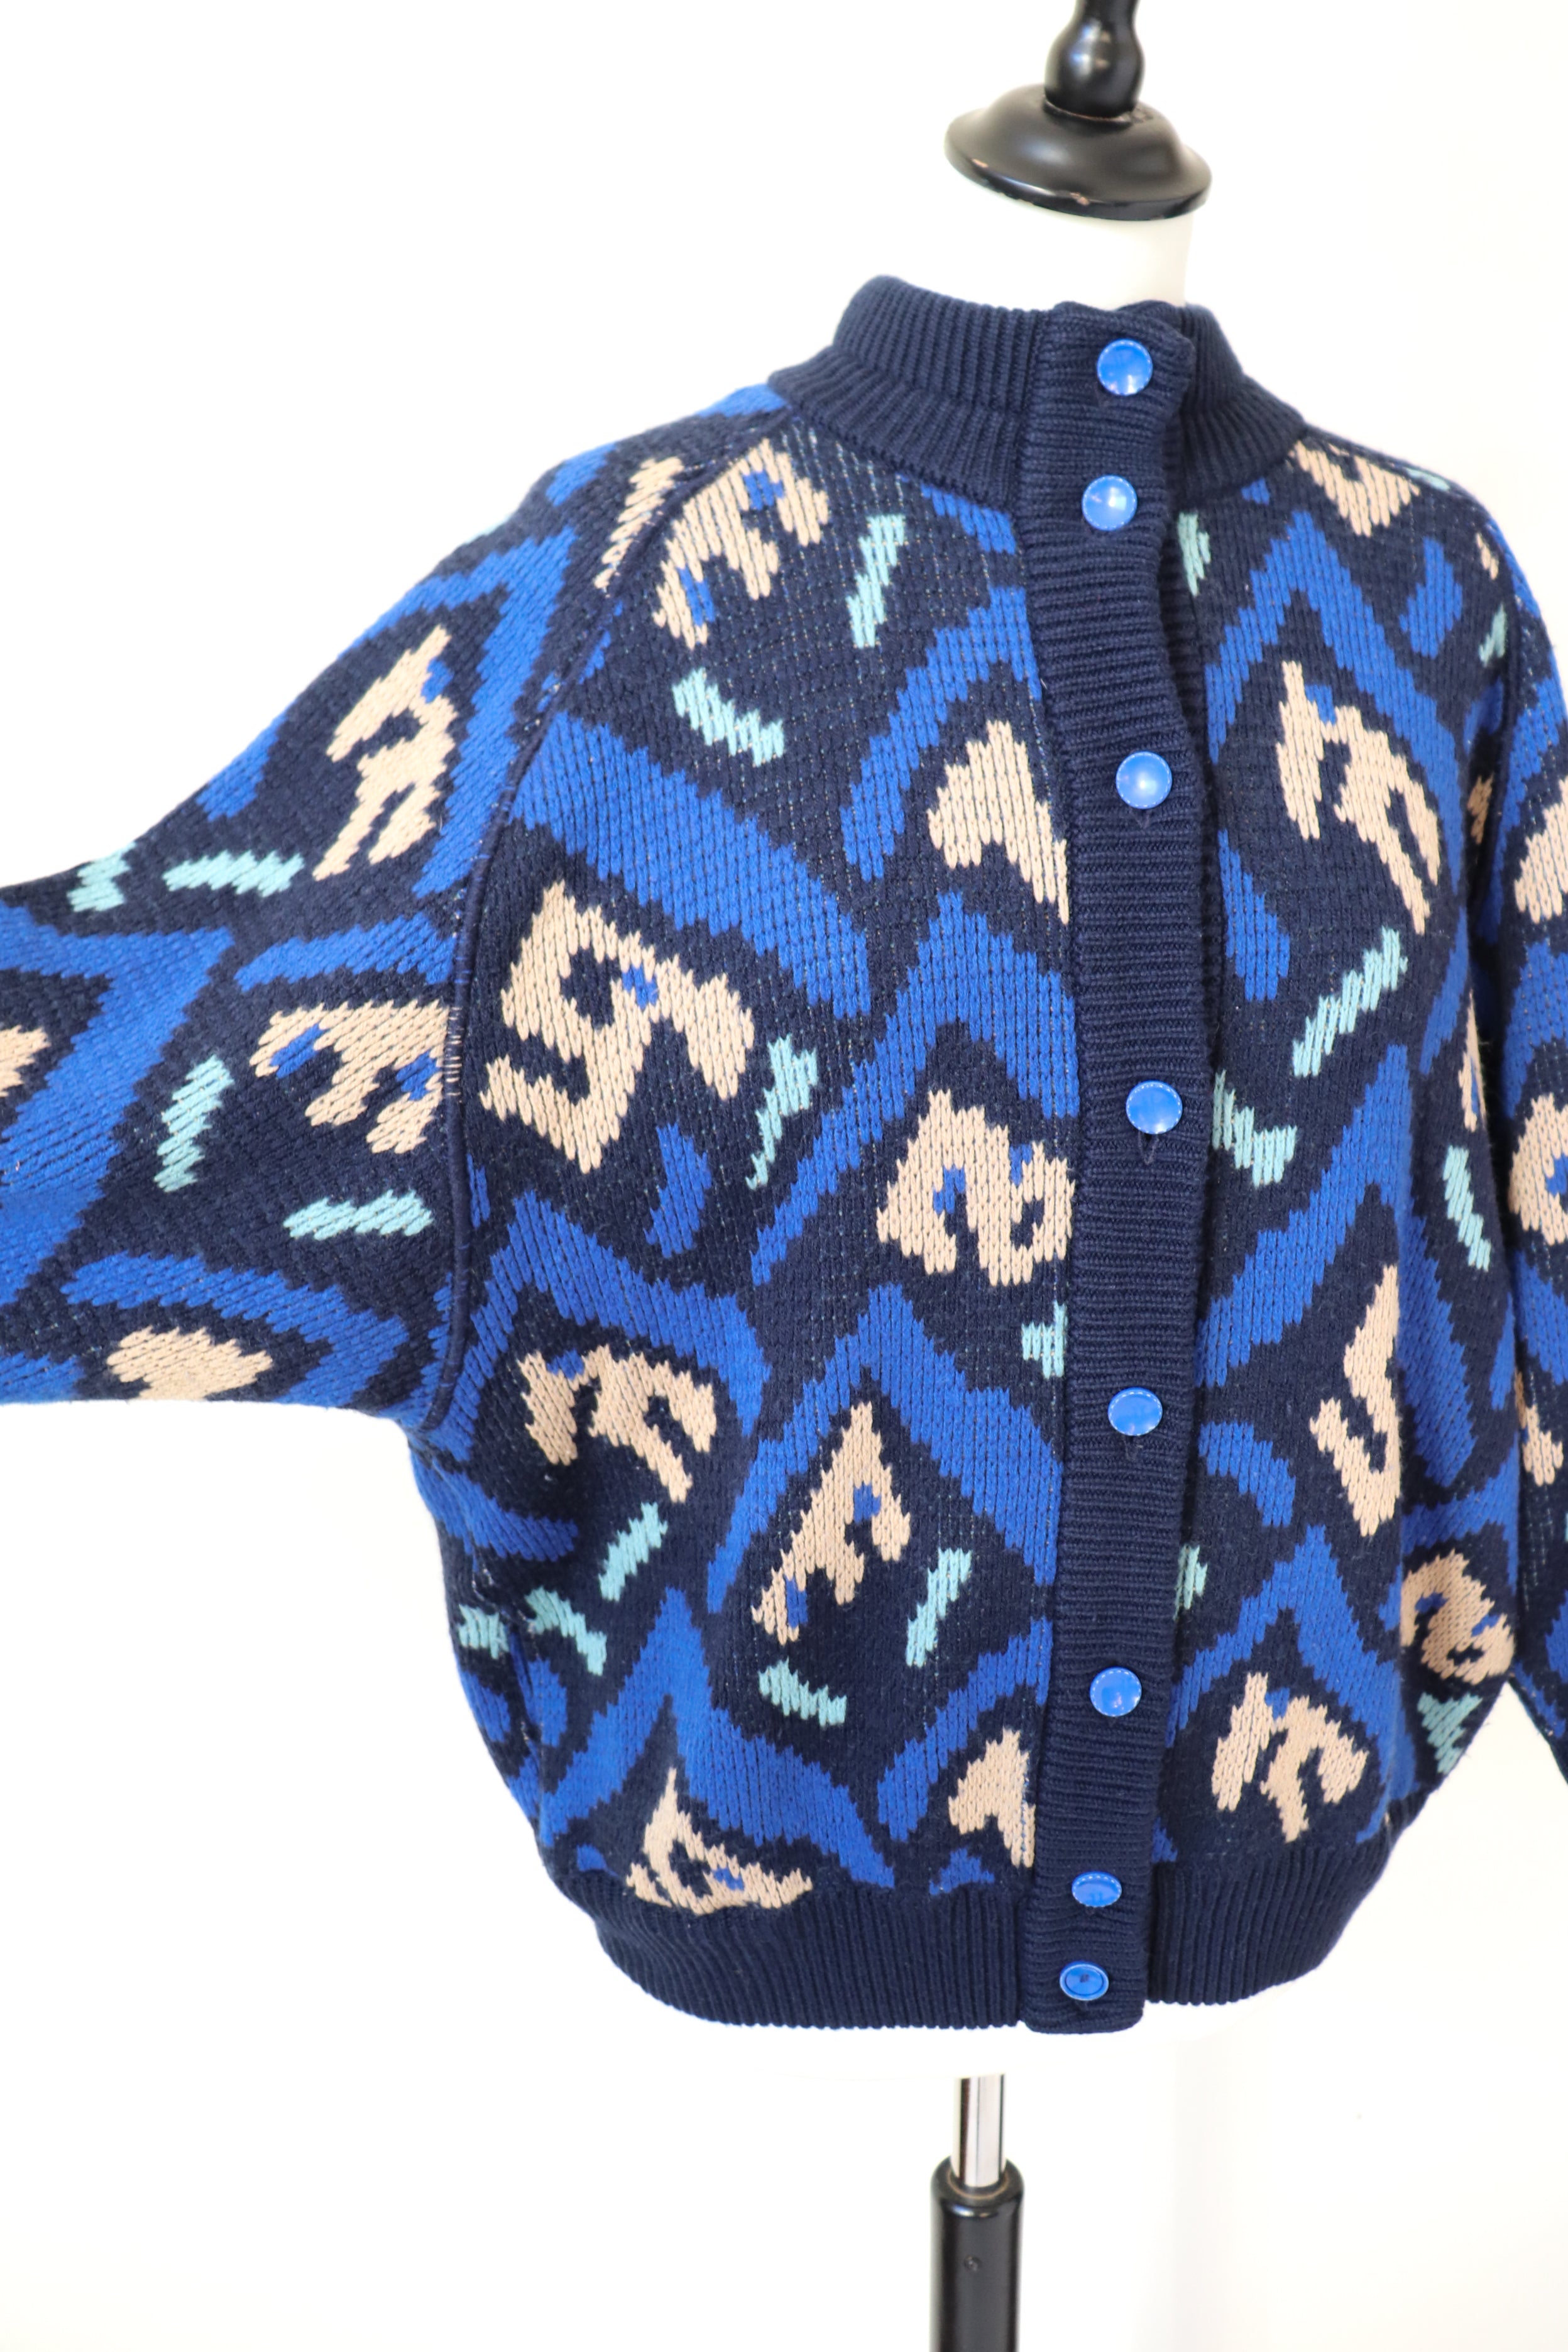 Vintage Cardigan / Bomber Jacket  - 1980s - Blue Wool Blend  - S / M / UK 10 / 12